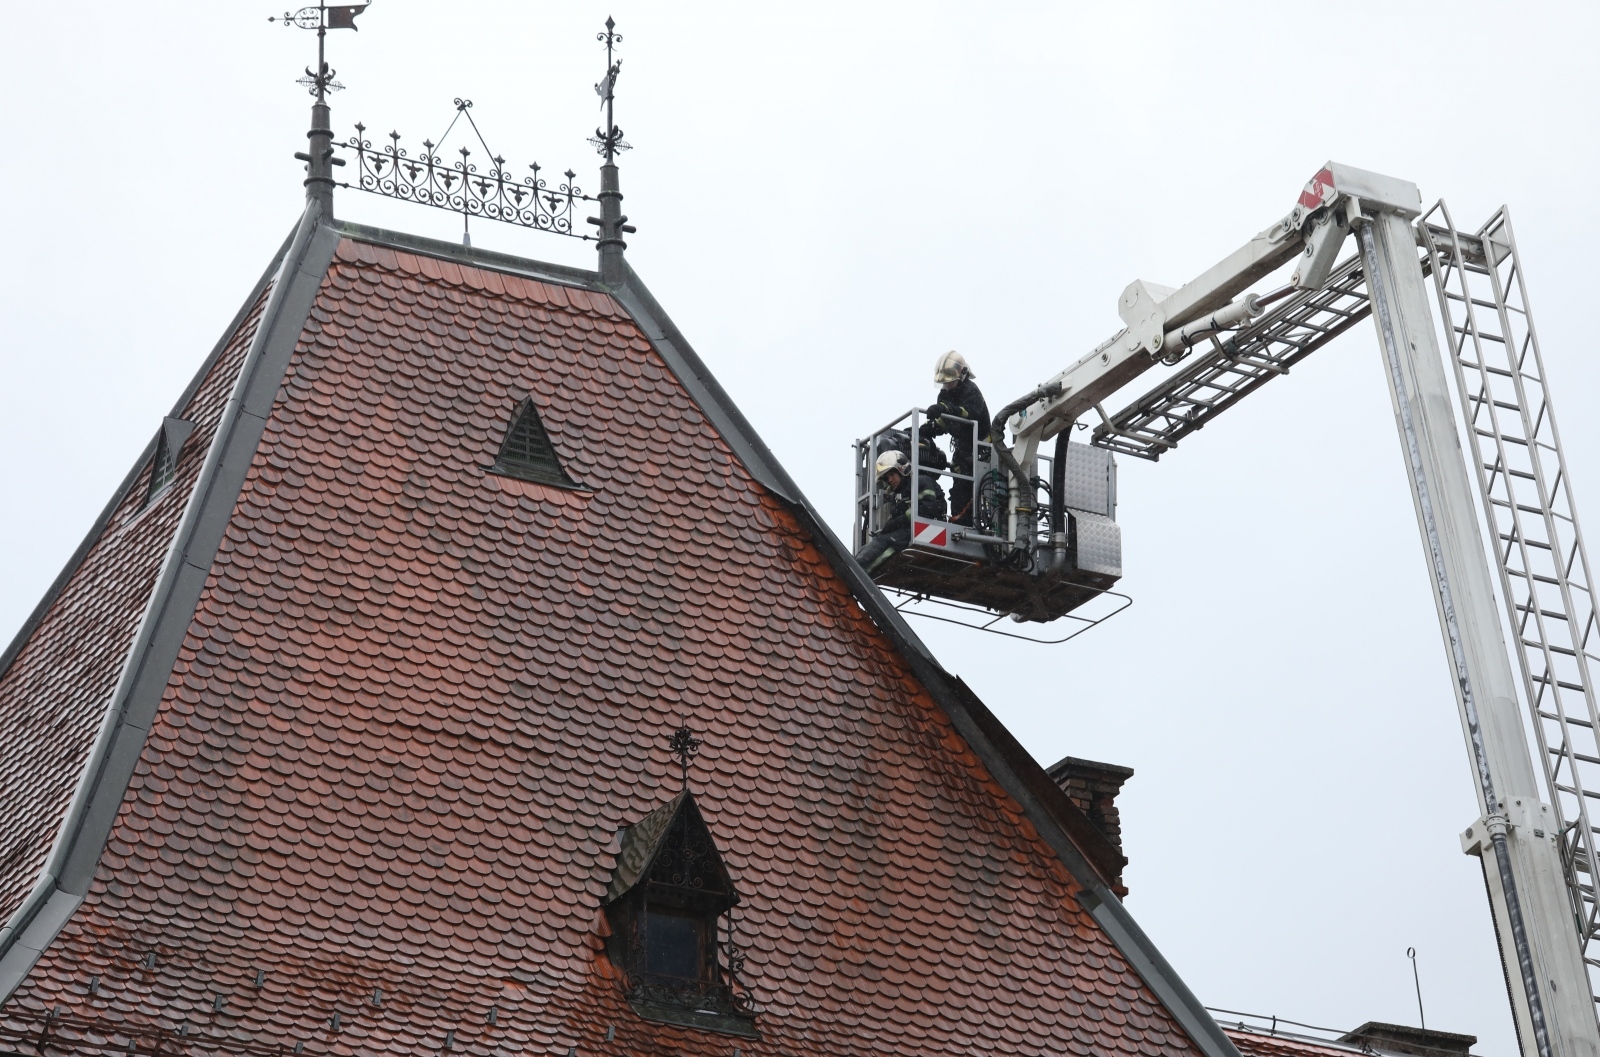 Vatrogasci su morali popravljati i krov na Muzeju za umjetnost i obrt, kojeg je oštetio jak vjetar.